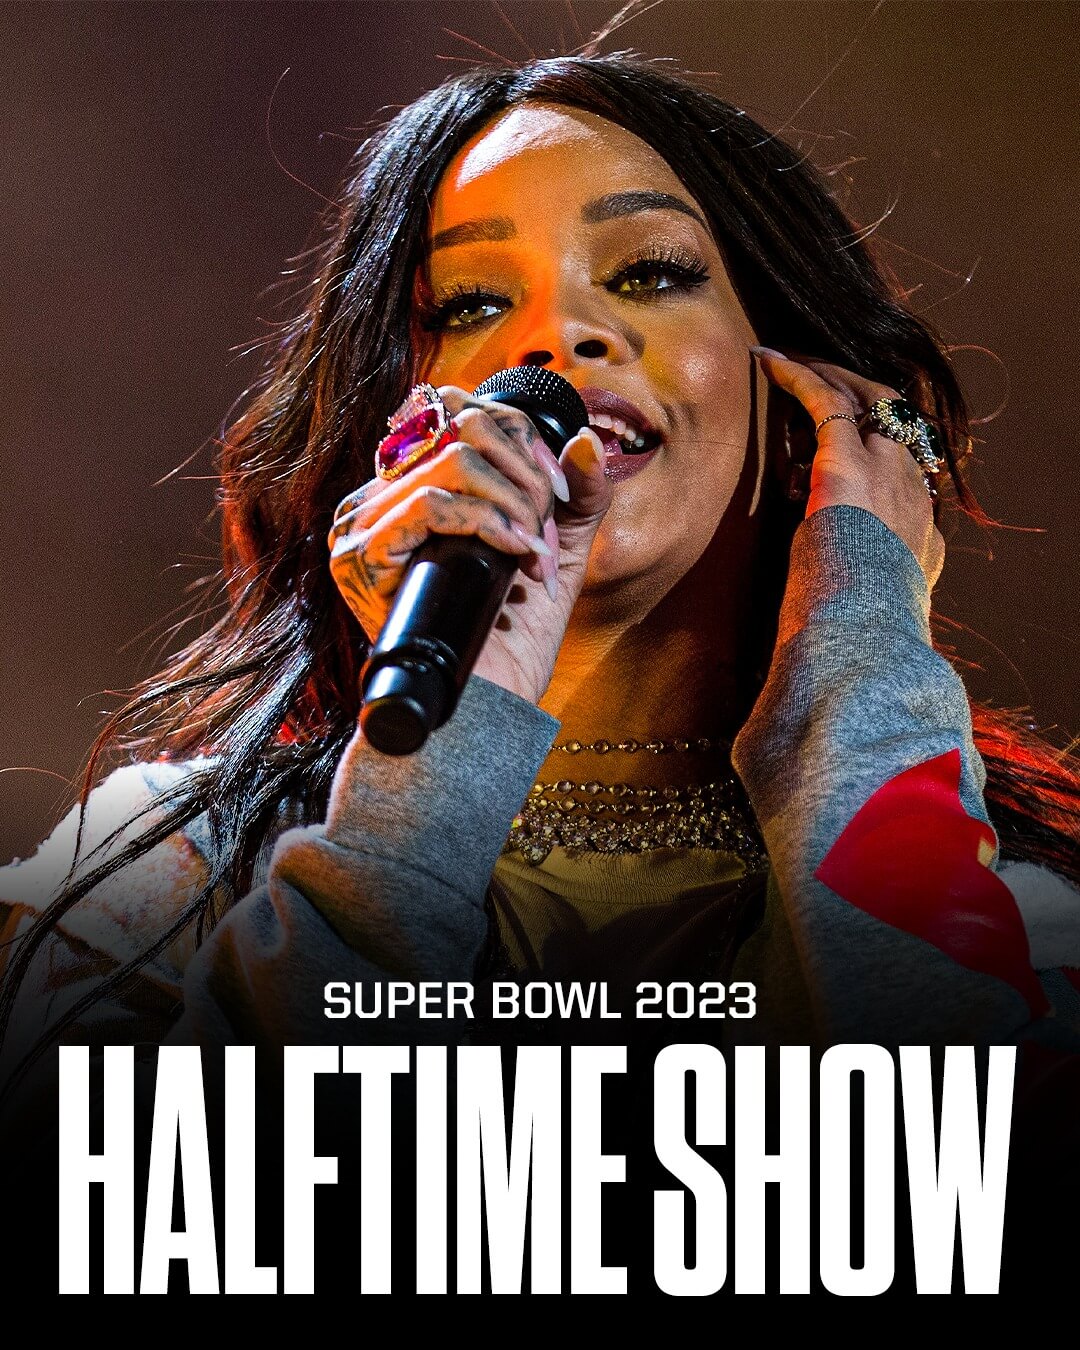 singer promos NFL superbowl halftime performance